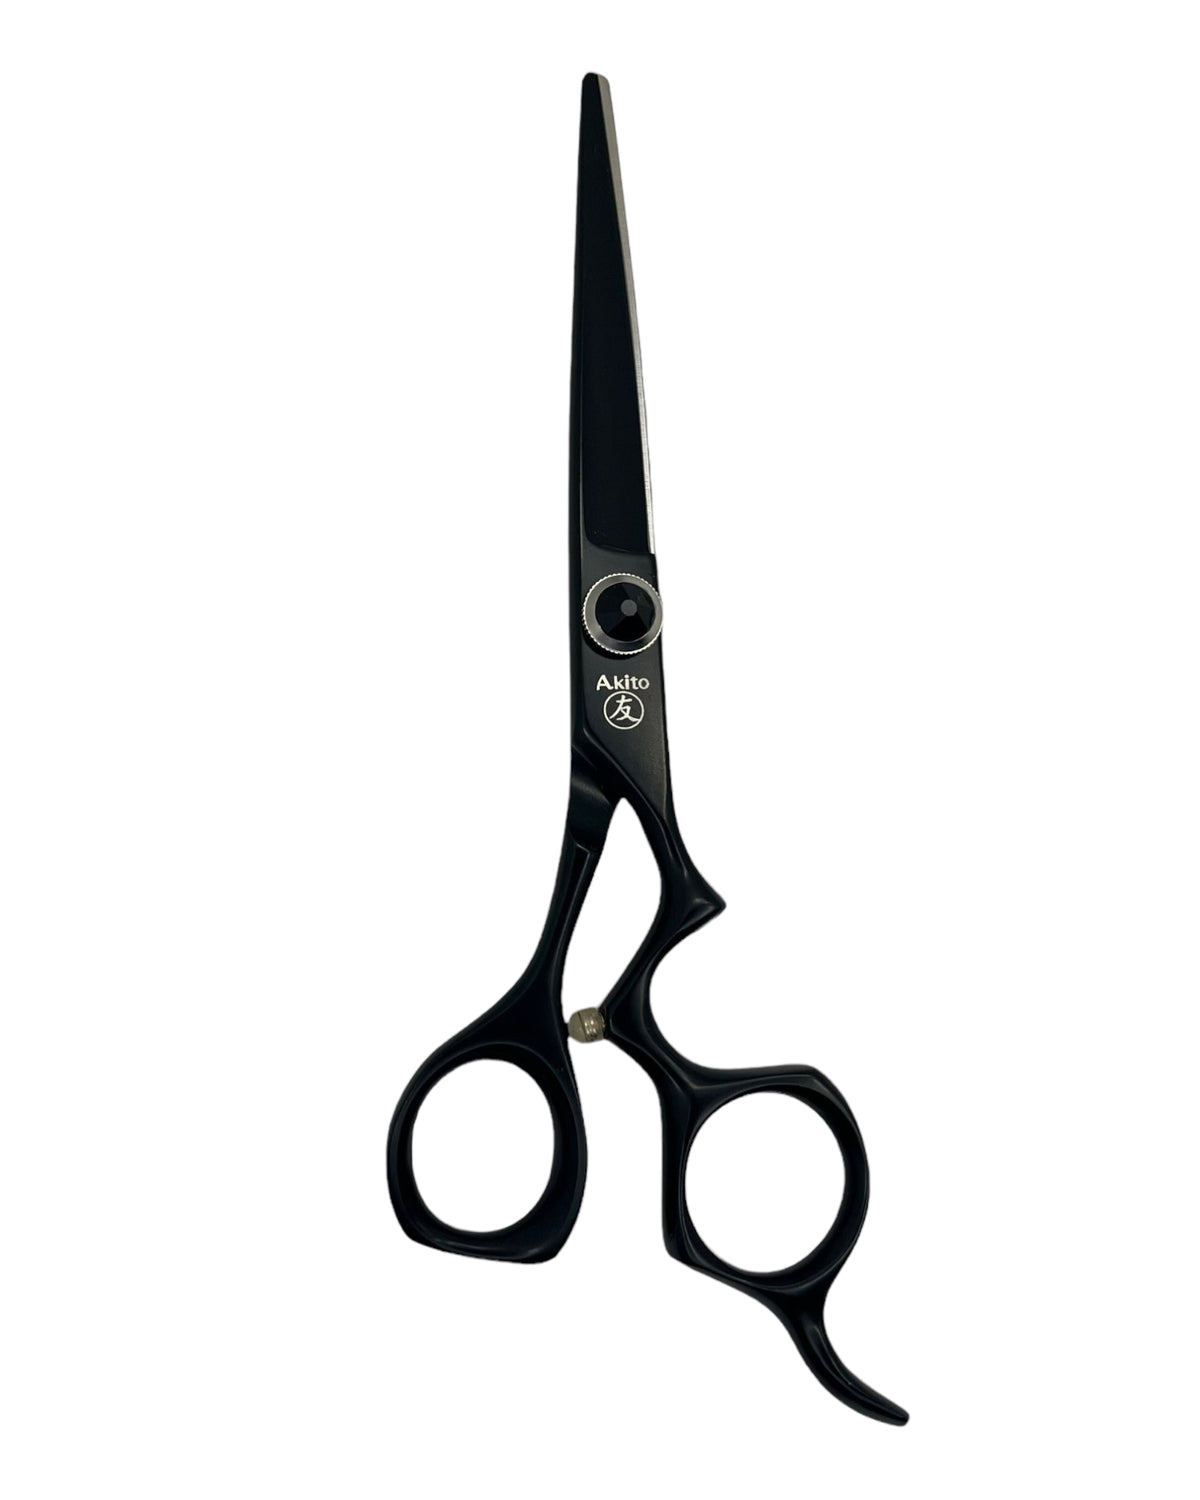 X 8 Black 6.25 Hairdressing Scissors